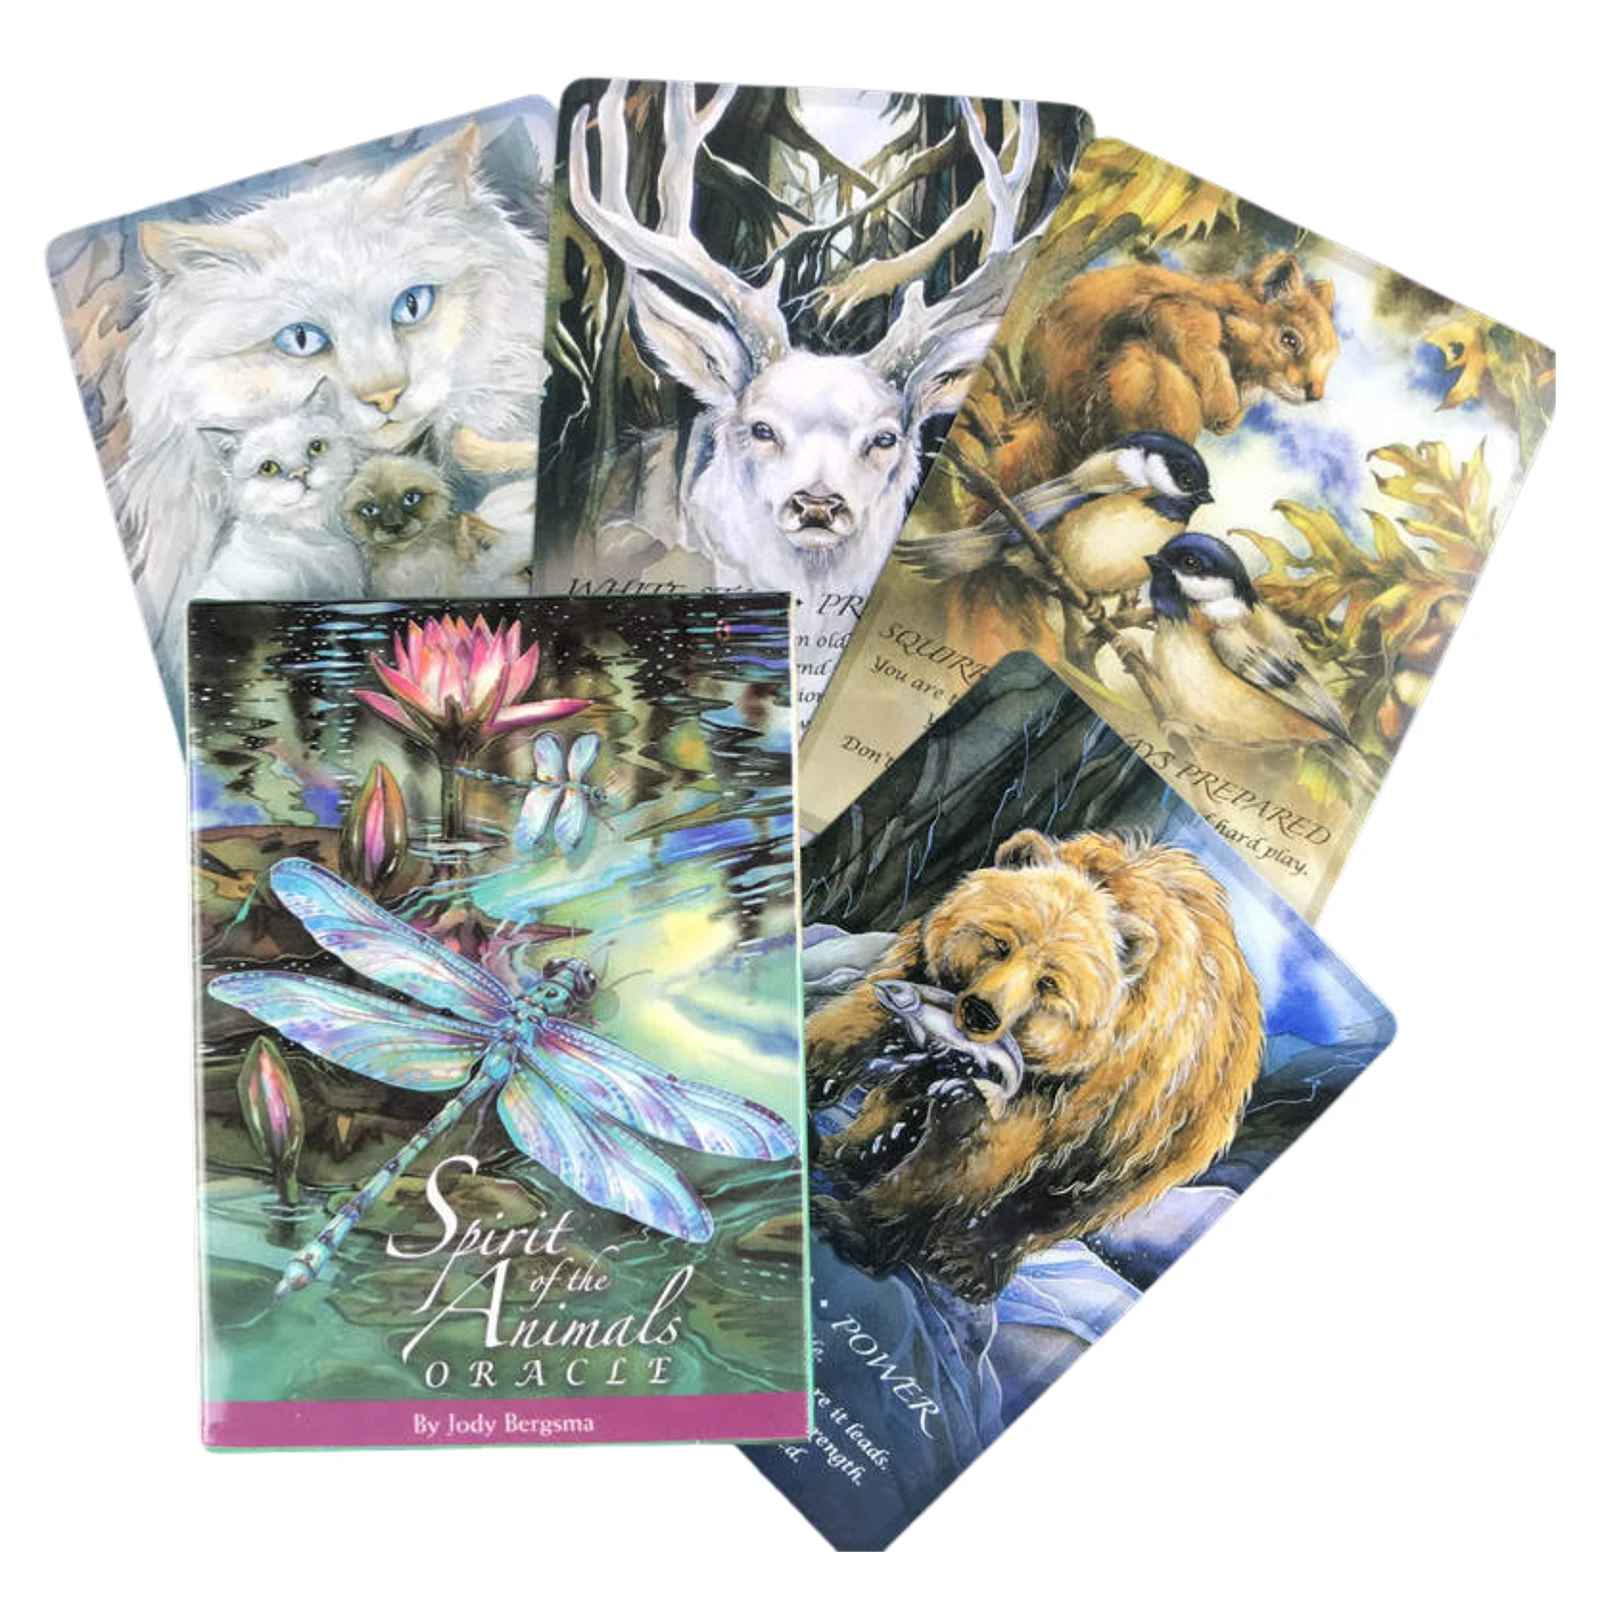 

Карты Таро для судьбы гадания дух животных карты с изображением оракла настольная игра Таро различные опции Таро для вечерние игральные ка...